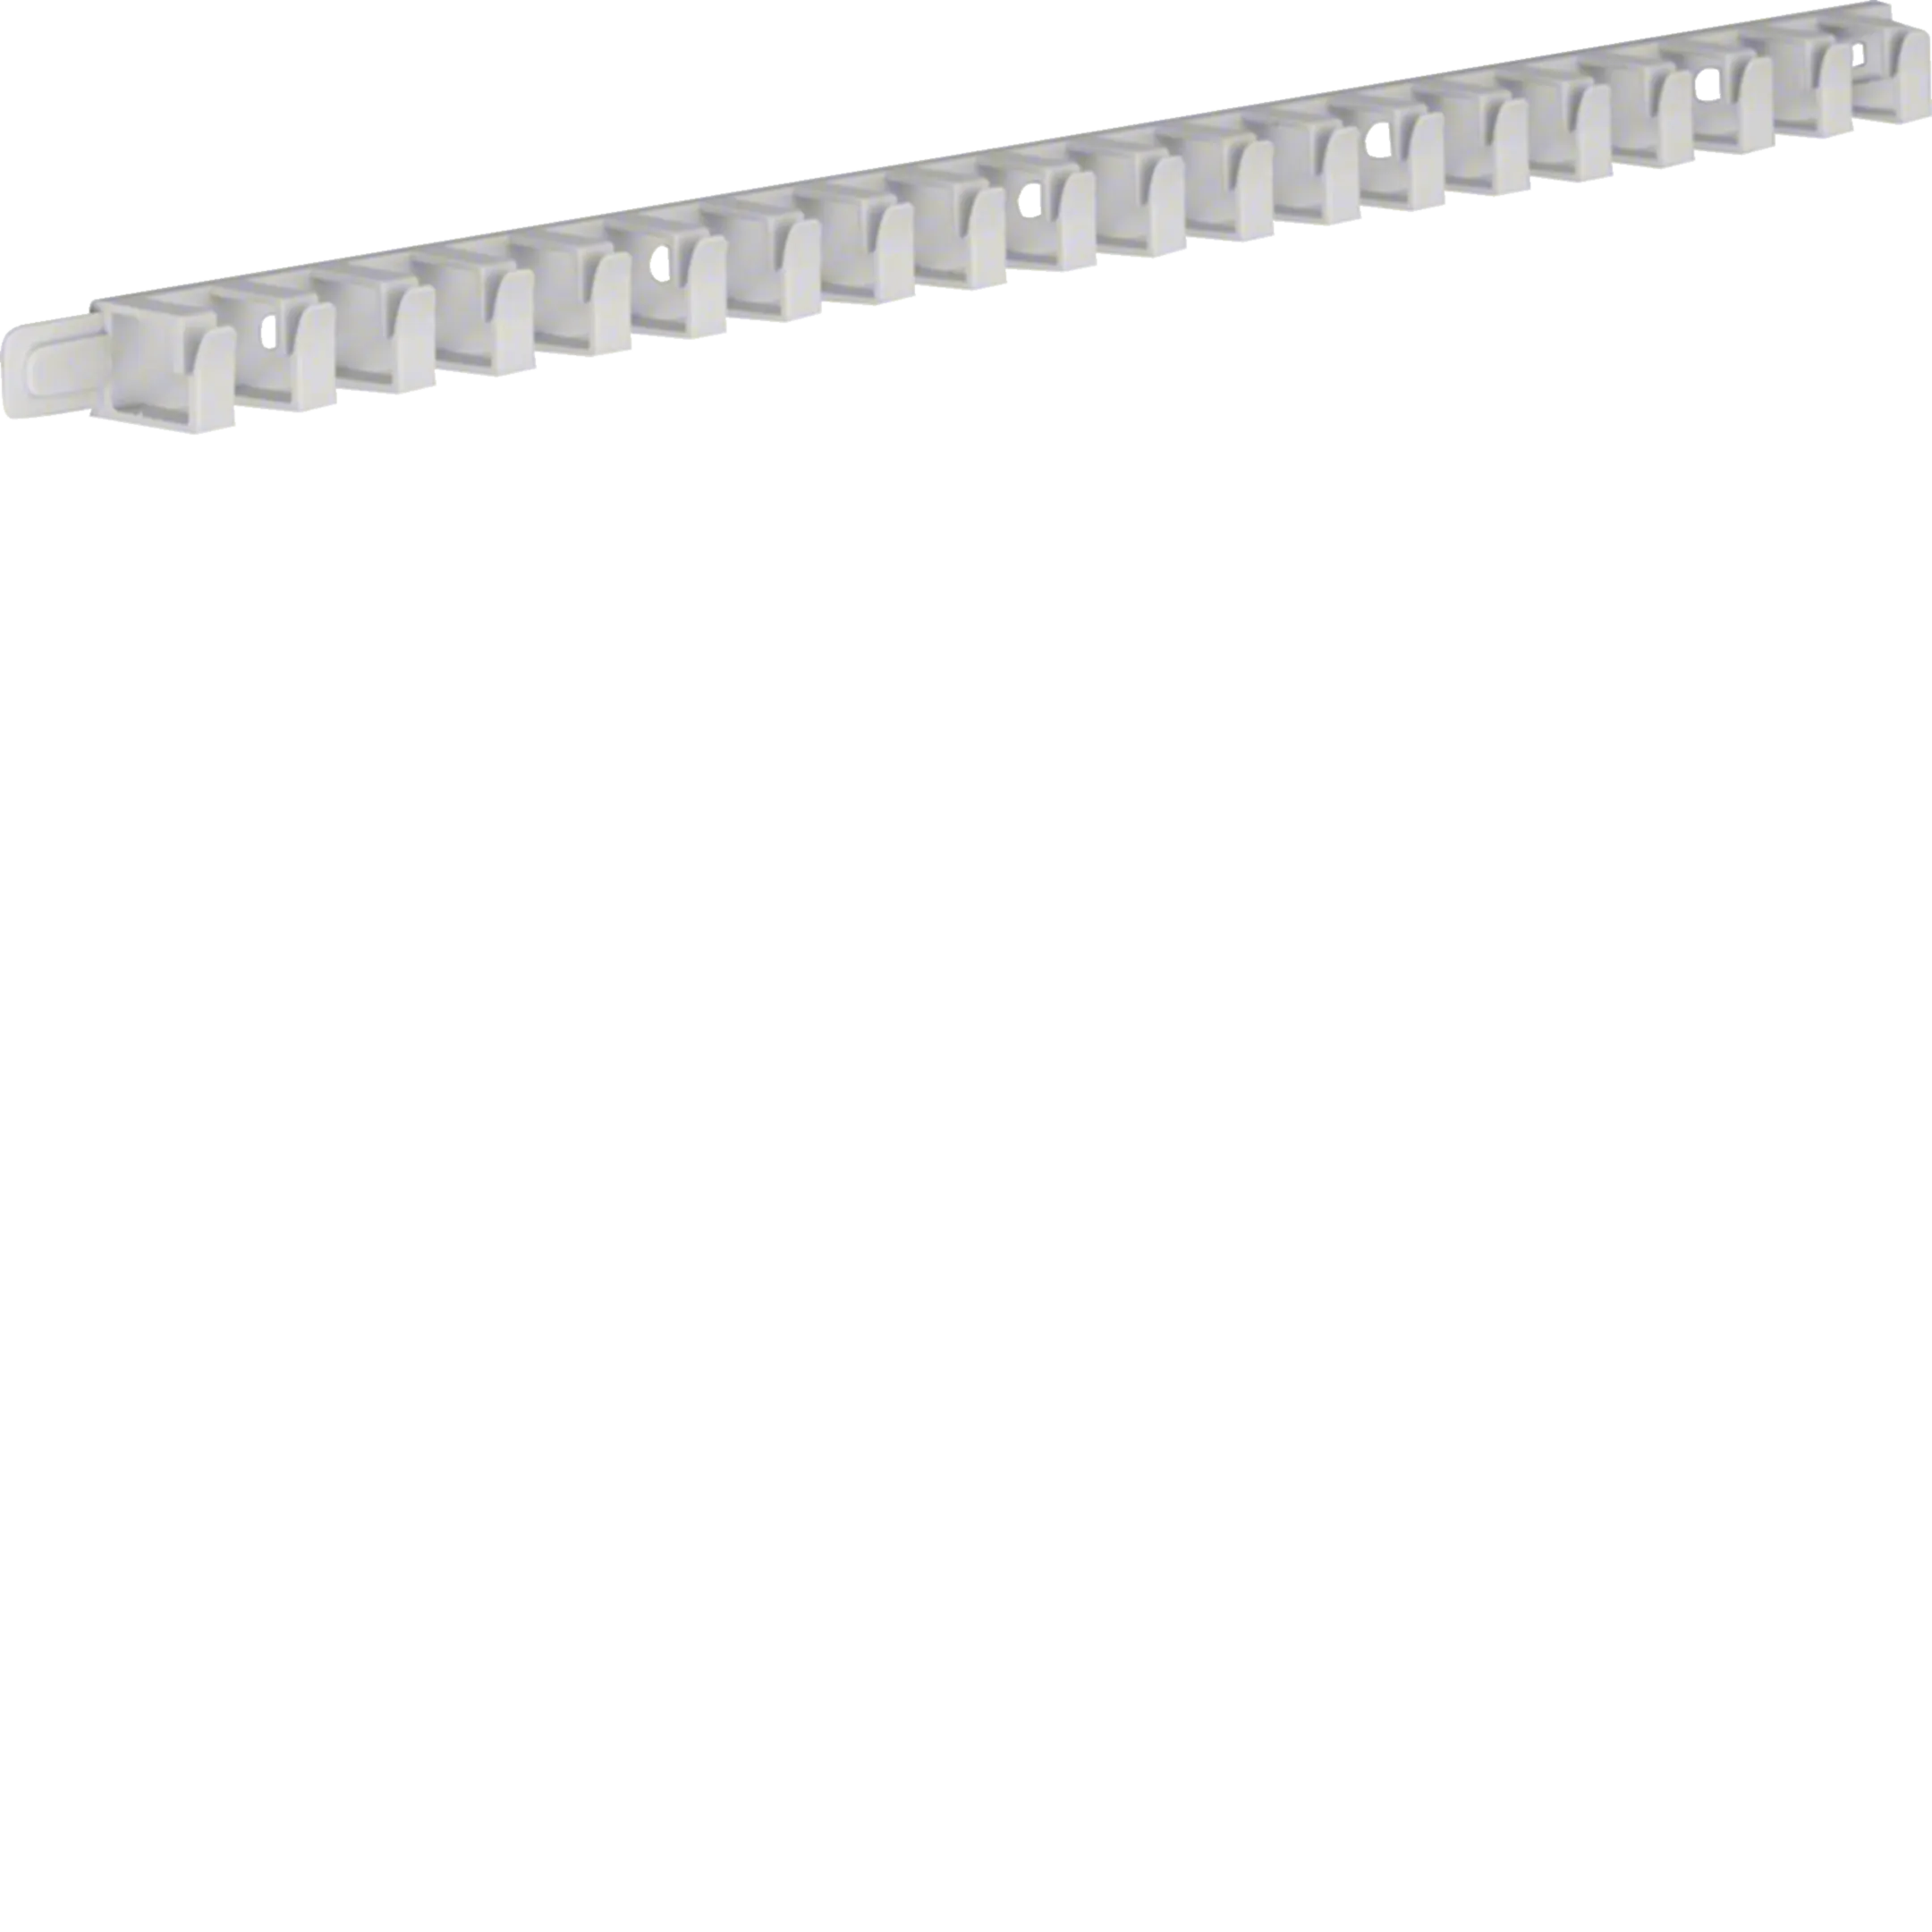 Goulotte de câblage flexible autocollante sans halogene 40mm L=500mm gris  clair Hager